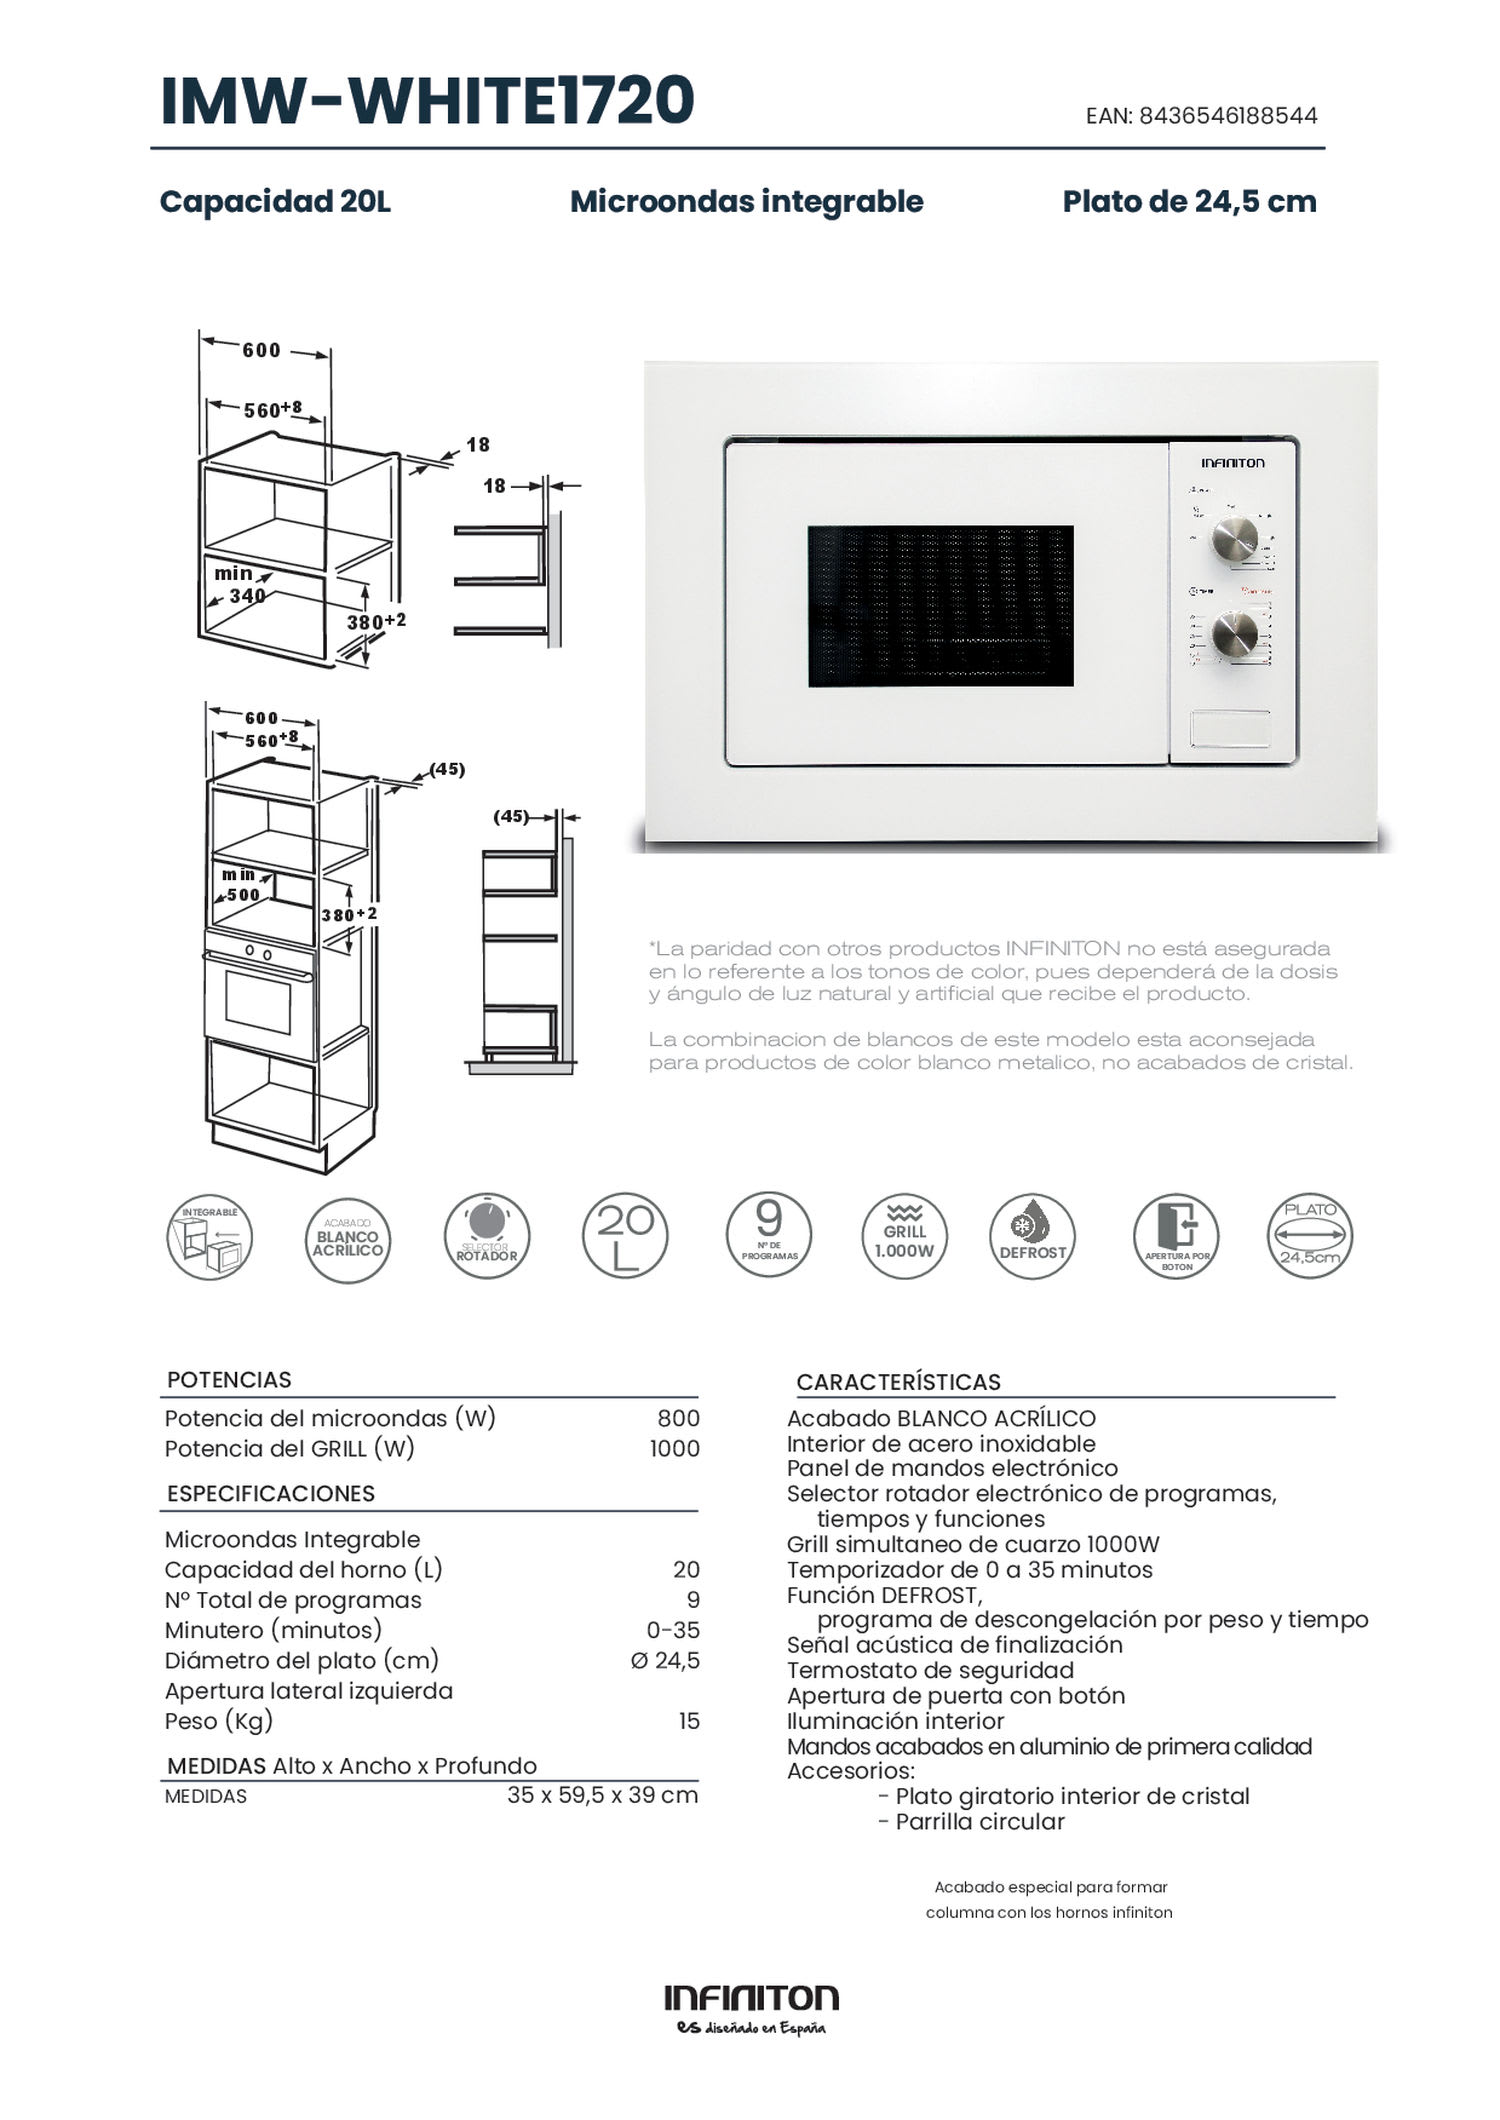 Microondas integrable INFINITON IMW-WHITE1720 - Blanco, 20L., Grill,  800W/1000W, Microondas integrable